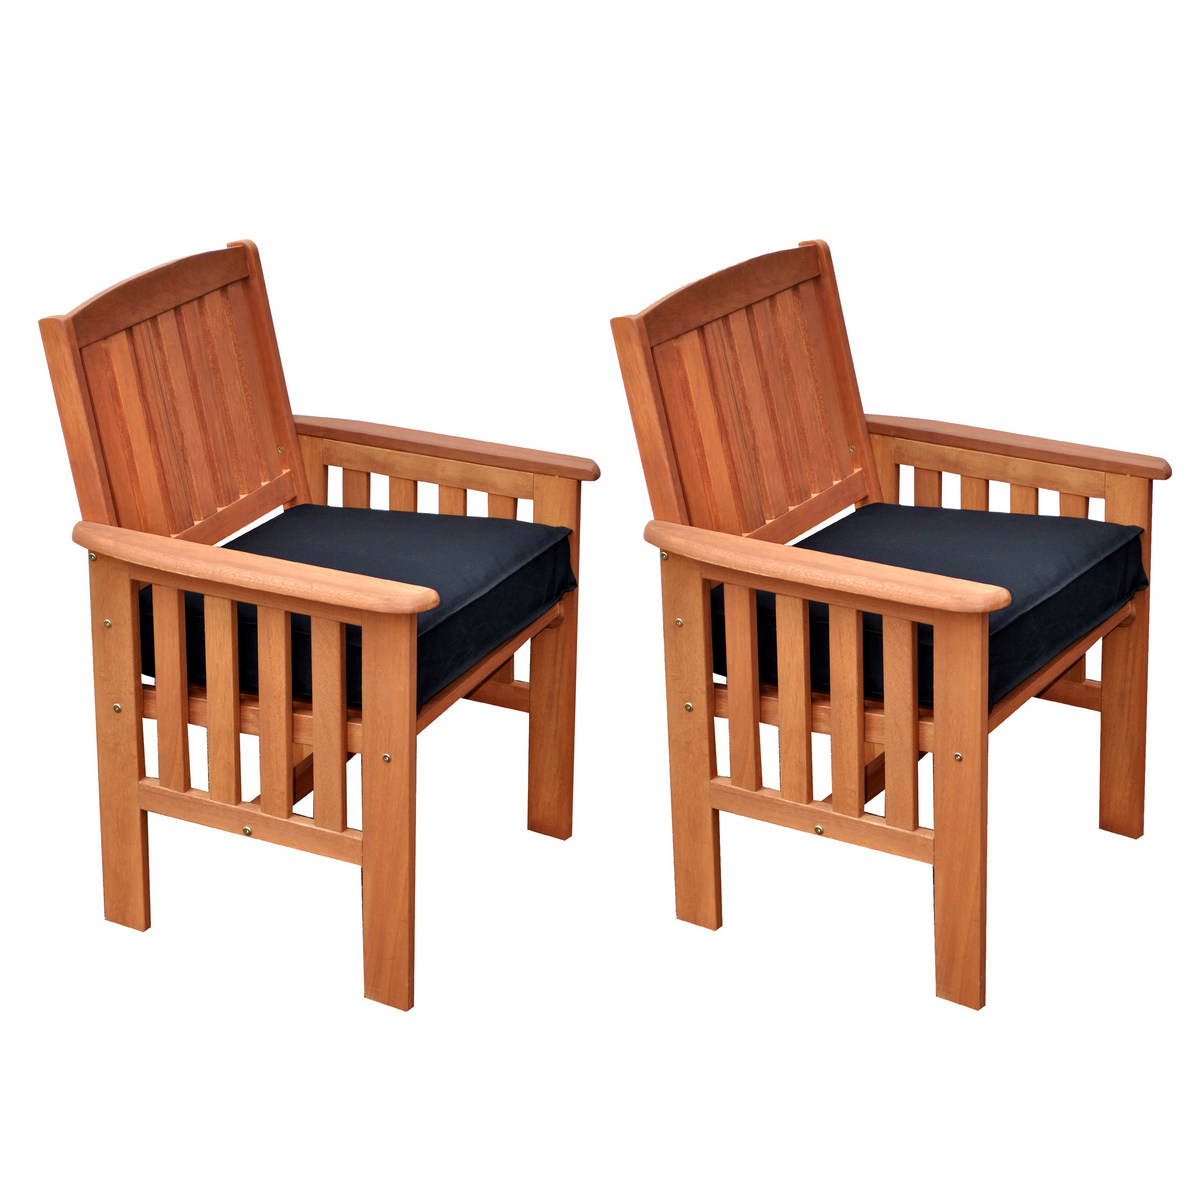 Corliving Pex-868-c Miramar Cinnamon Brown Hardwood Outdoor Armchairs, Set Of 2